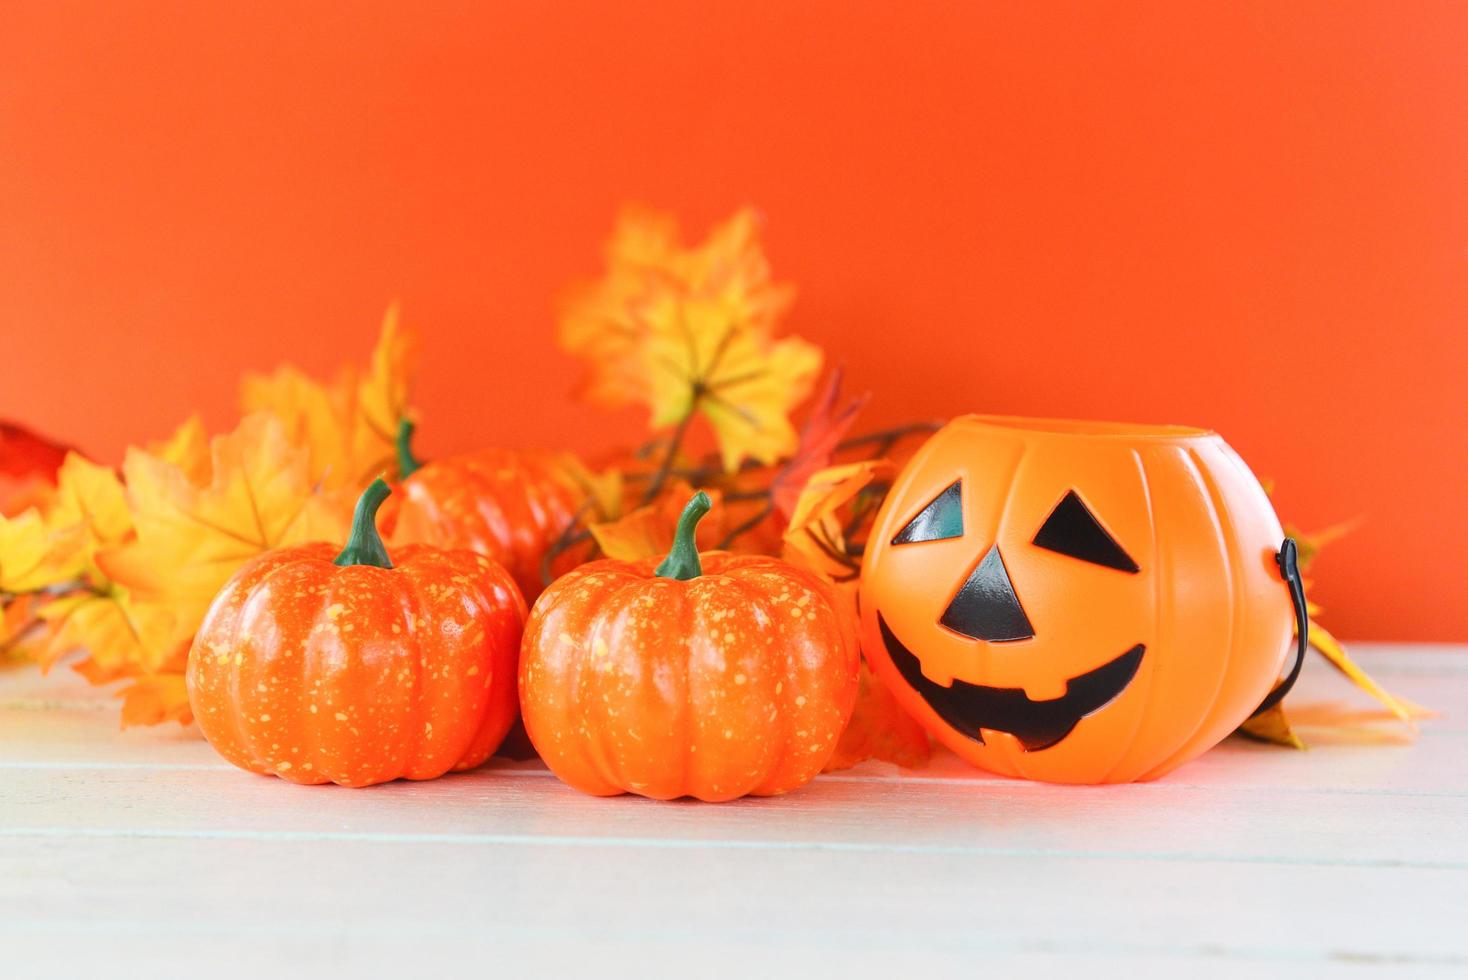 halloween achtergrond oranje versierd vakantie feestelijk concept - bladeren herfst en jack O lantaarn pompoen halloween decoraties voor partij accessoires voorwerp foto